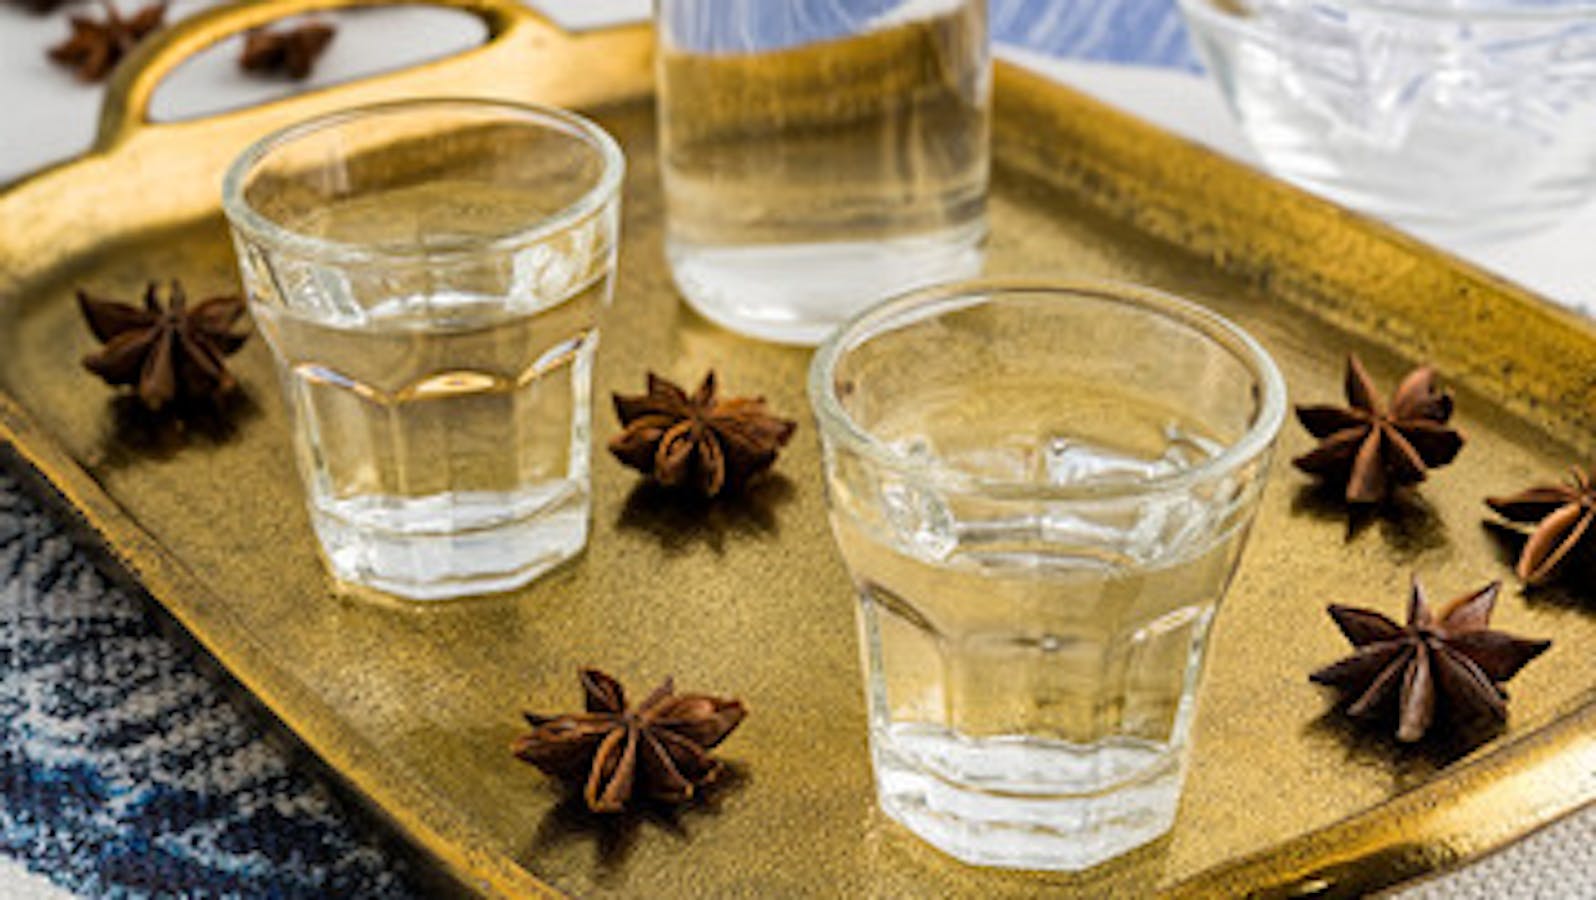 How to Drink Ouzo, Raki or Tsipouro